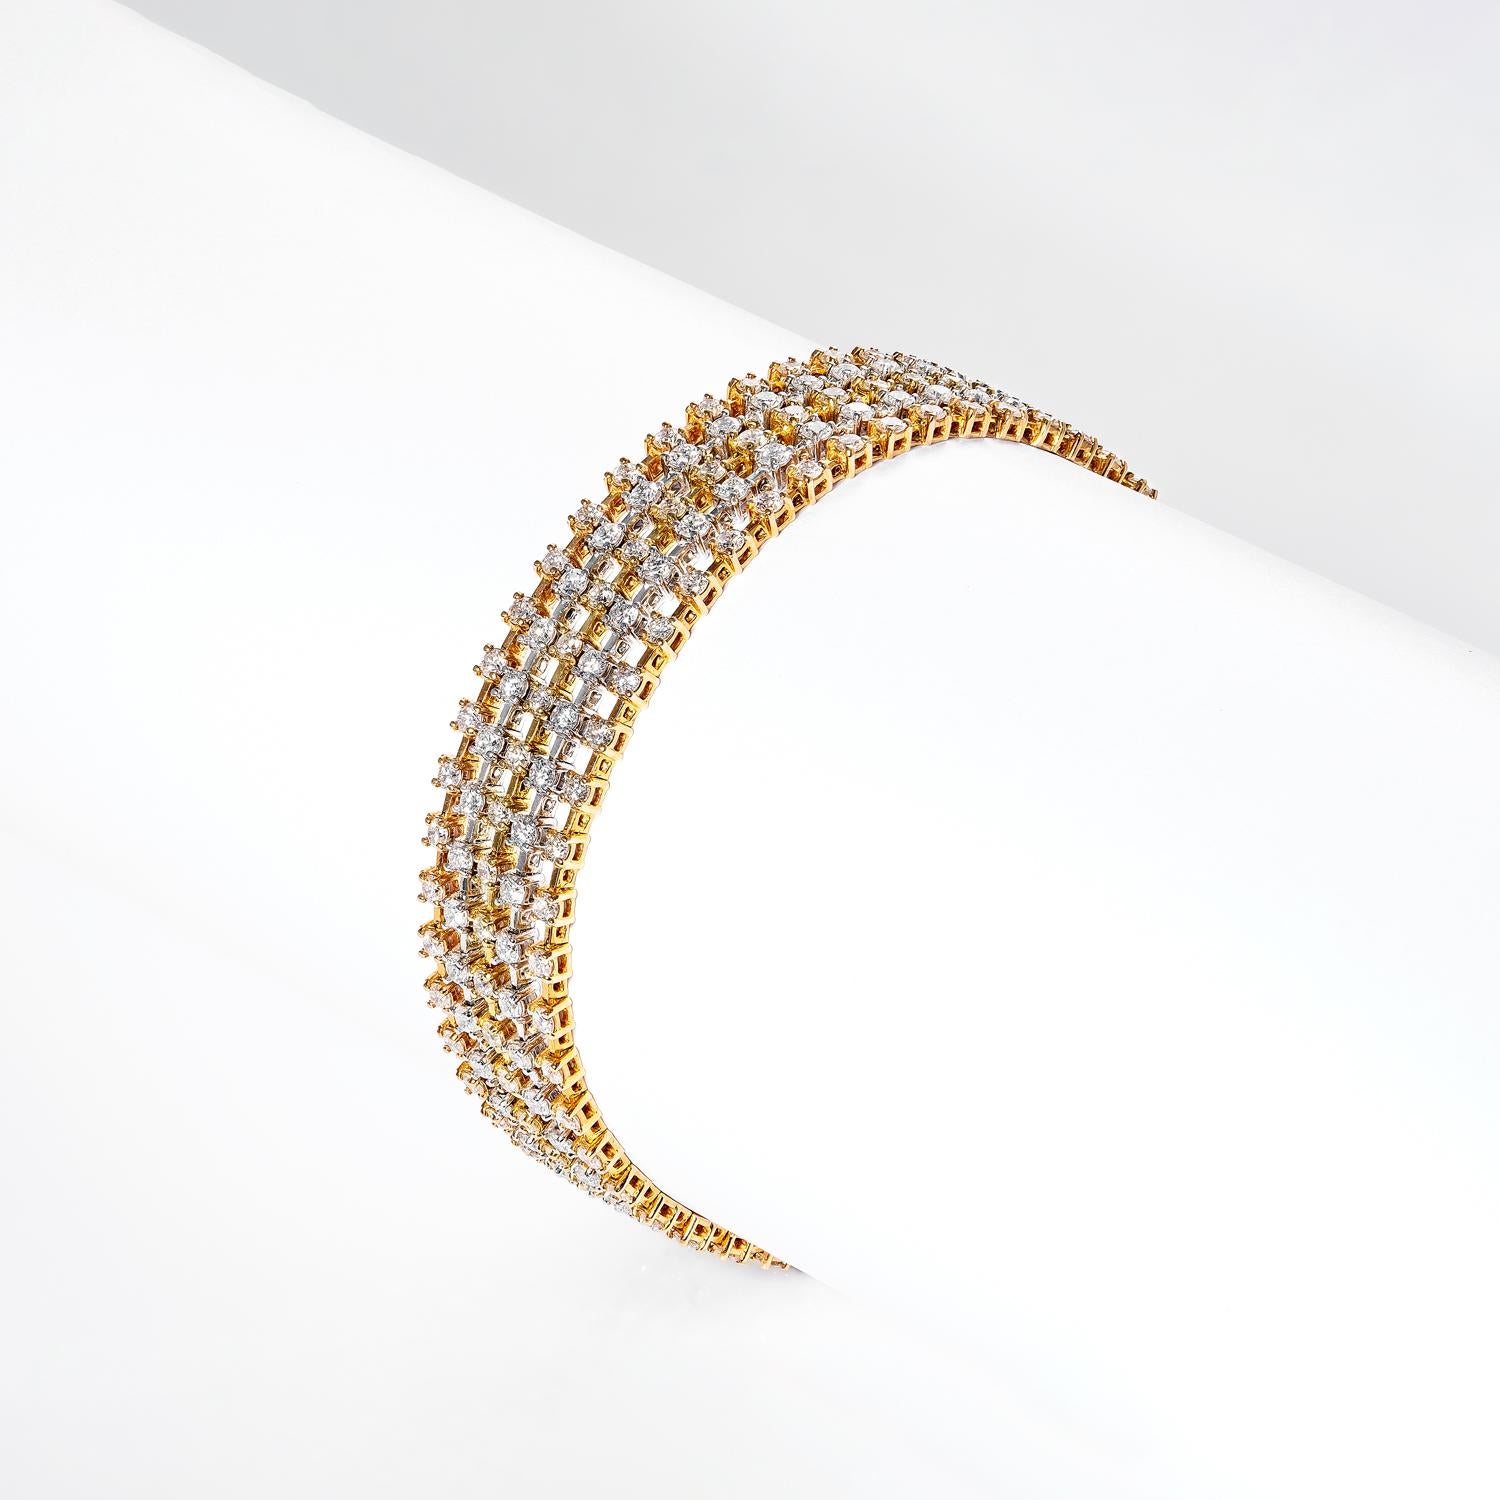 Das Jazmin 7 Carat 5 Strand Diamond Bracelet ist ein atemberaubendes Schmuckstück, gefertigt aus luxuriösem 18K Gelbgold und komplizierten Diamantdetails. Mit seinen insgesamt 250 Diamanten sticht dieses Armband aus der Masse heraus. Sie ist